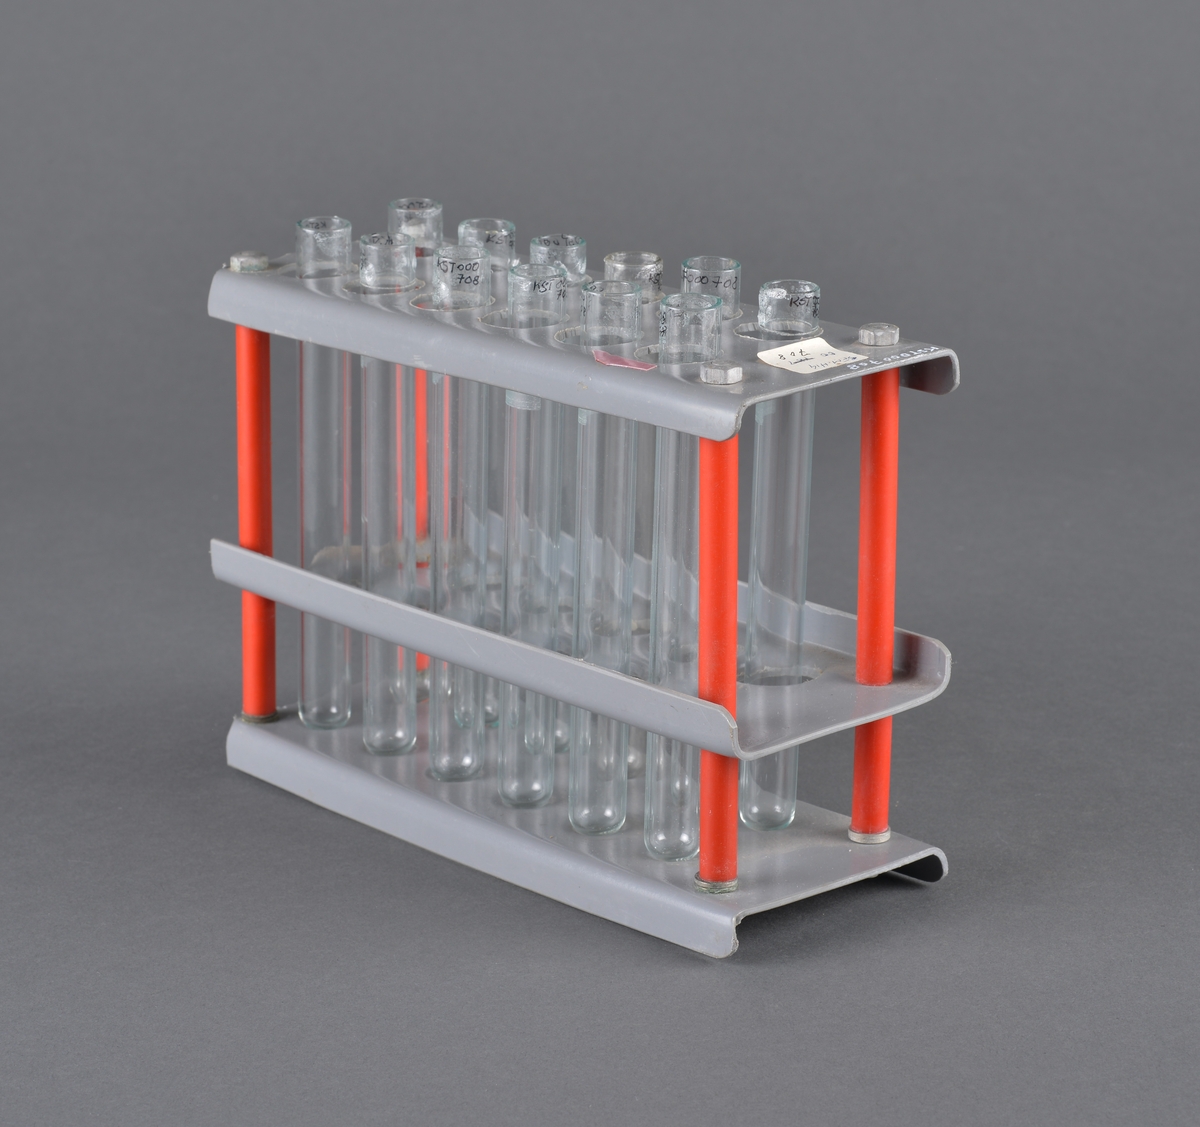 Reagensglass brukt ved laboratorium.
Stativ med 12 glass